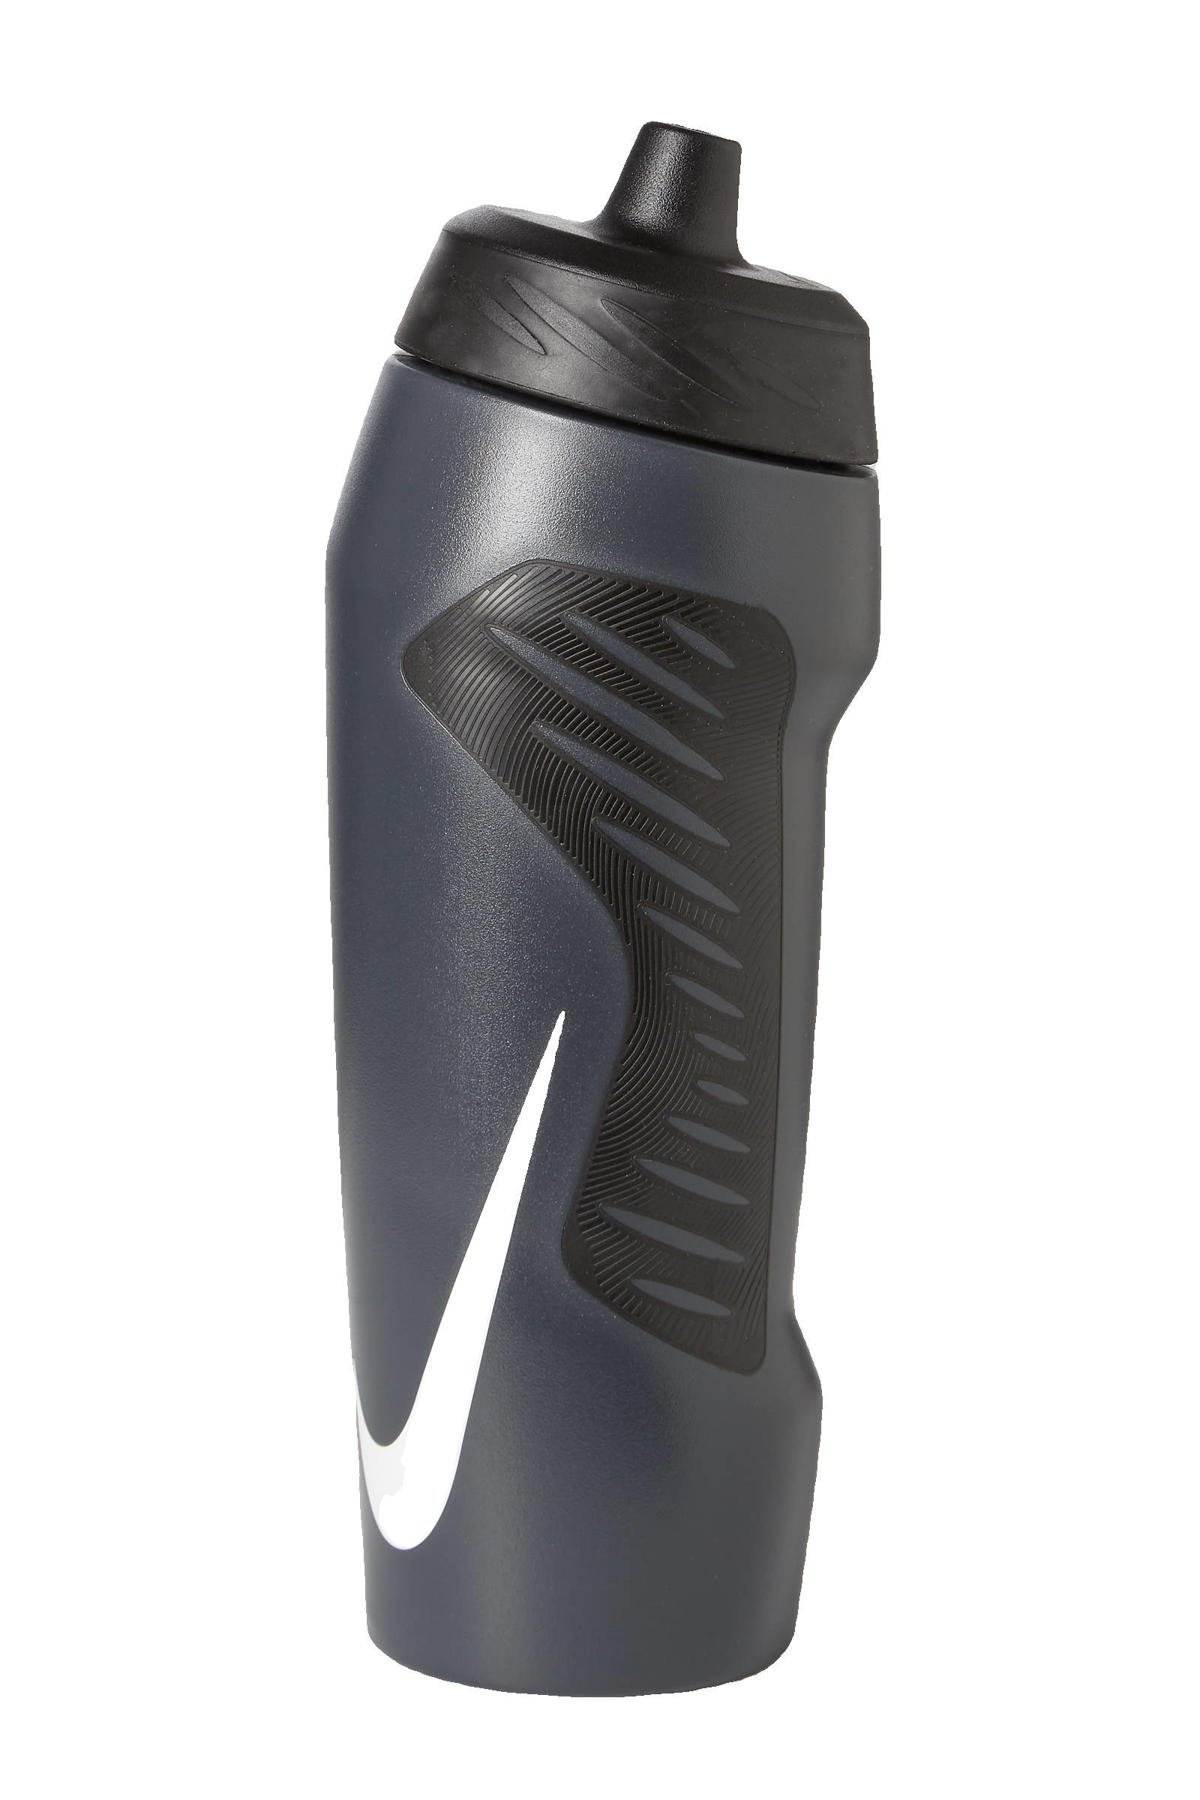 krant maak het plat alarm Nike sportbidon - 710 ml grijs/zwart | wehkamp